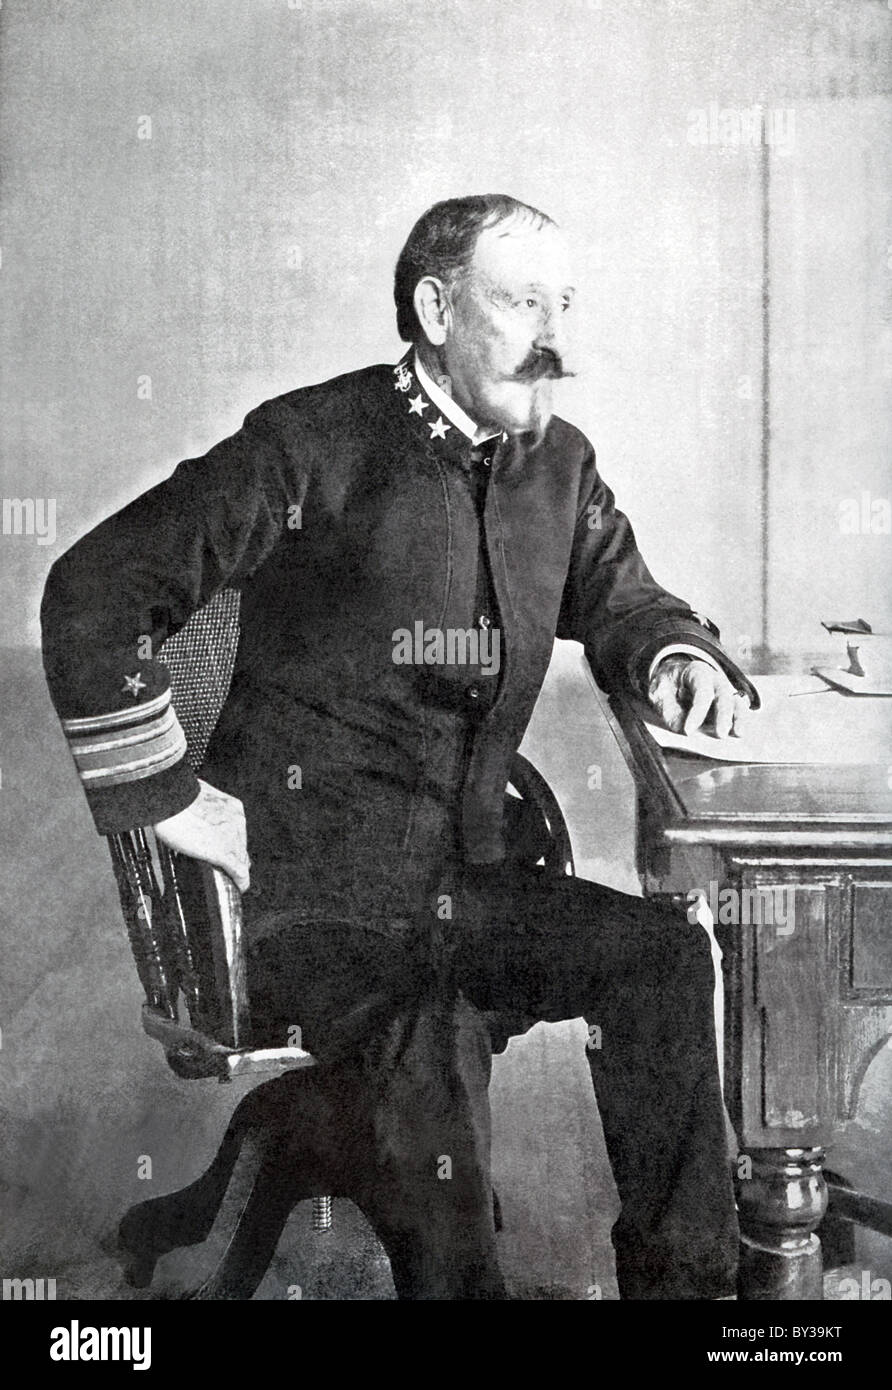 Winfield Scott Schley, un ammiraglio nella Marina Militare degli Stati Uniti. è stato acclamato eroe della battaglia a Santiago Bay (1898). Foto Stock